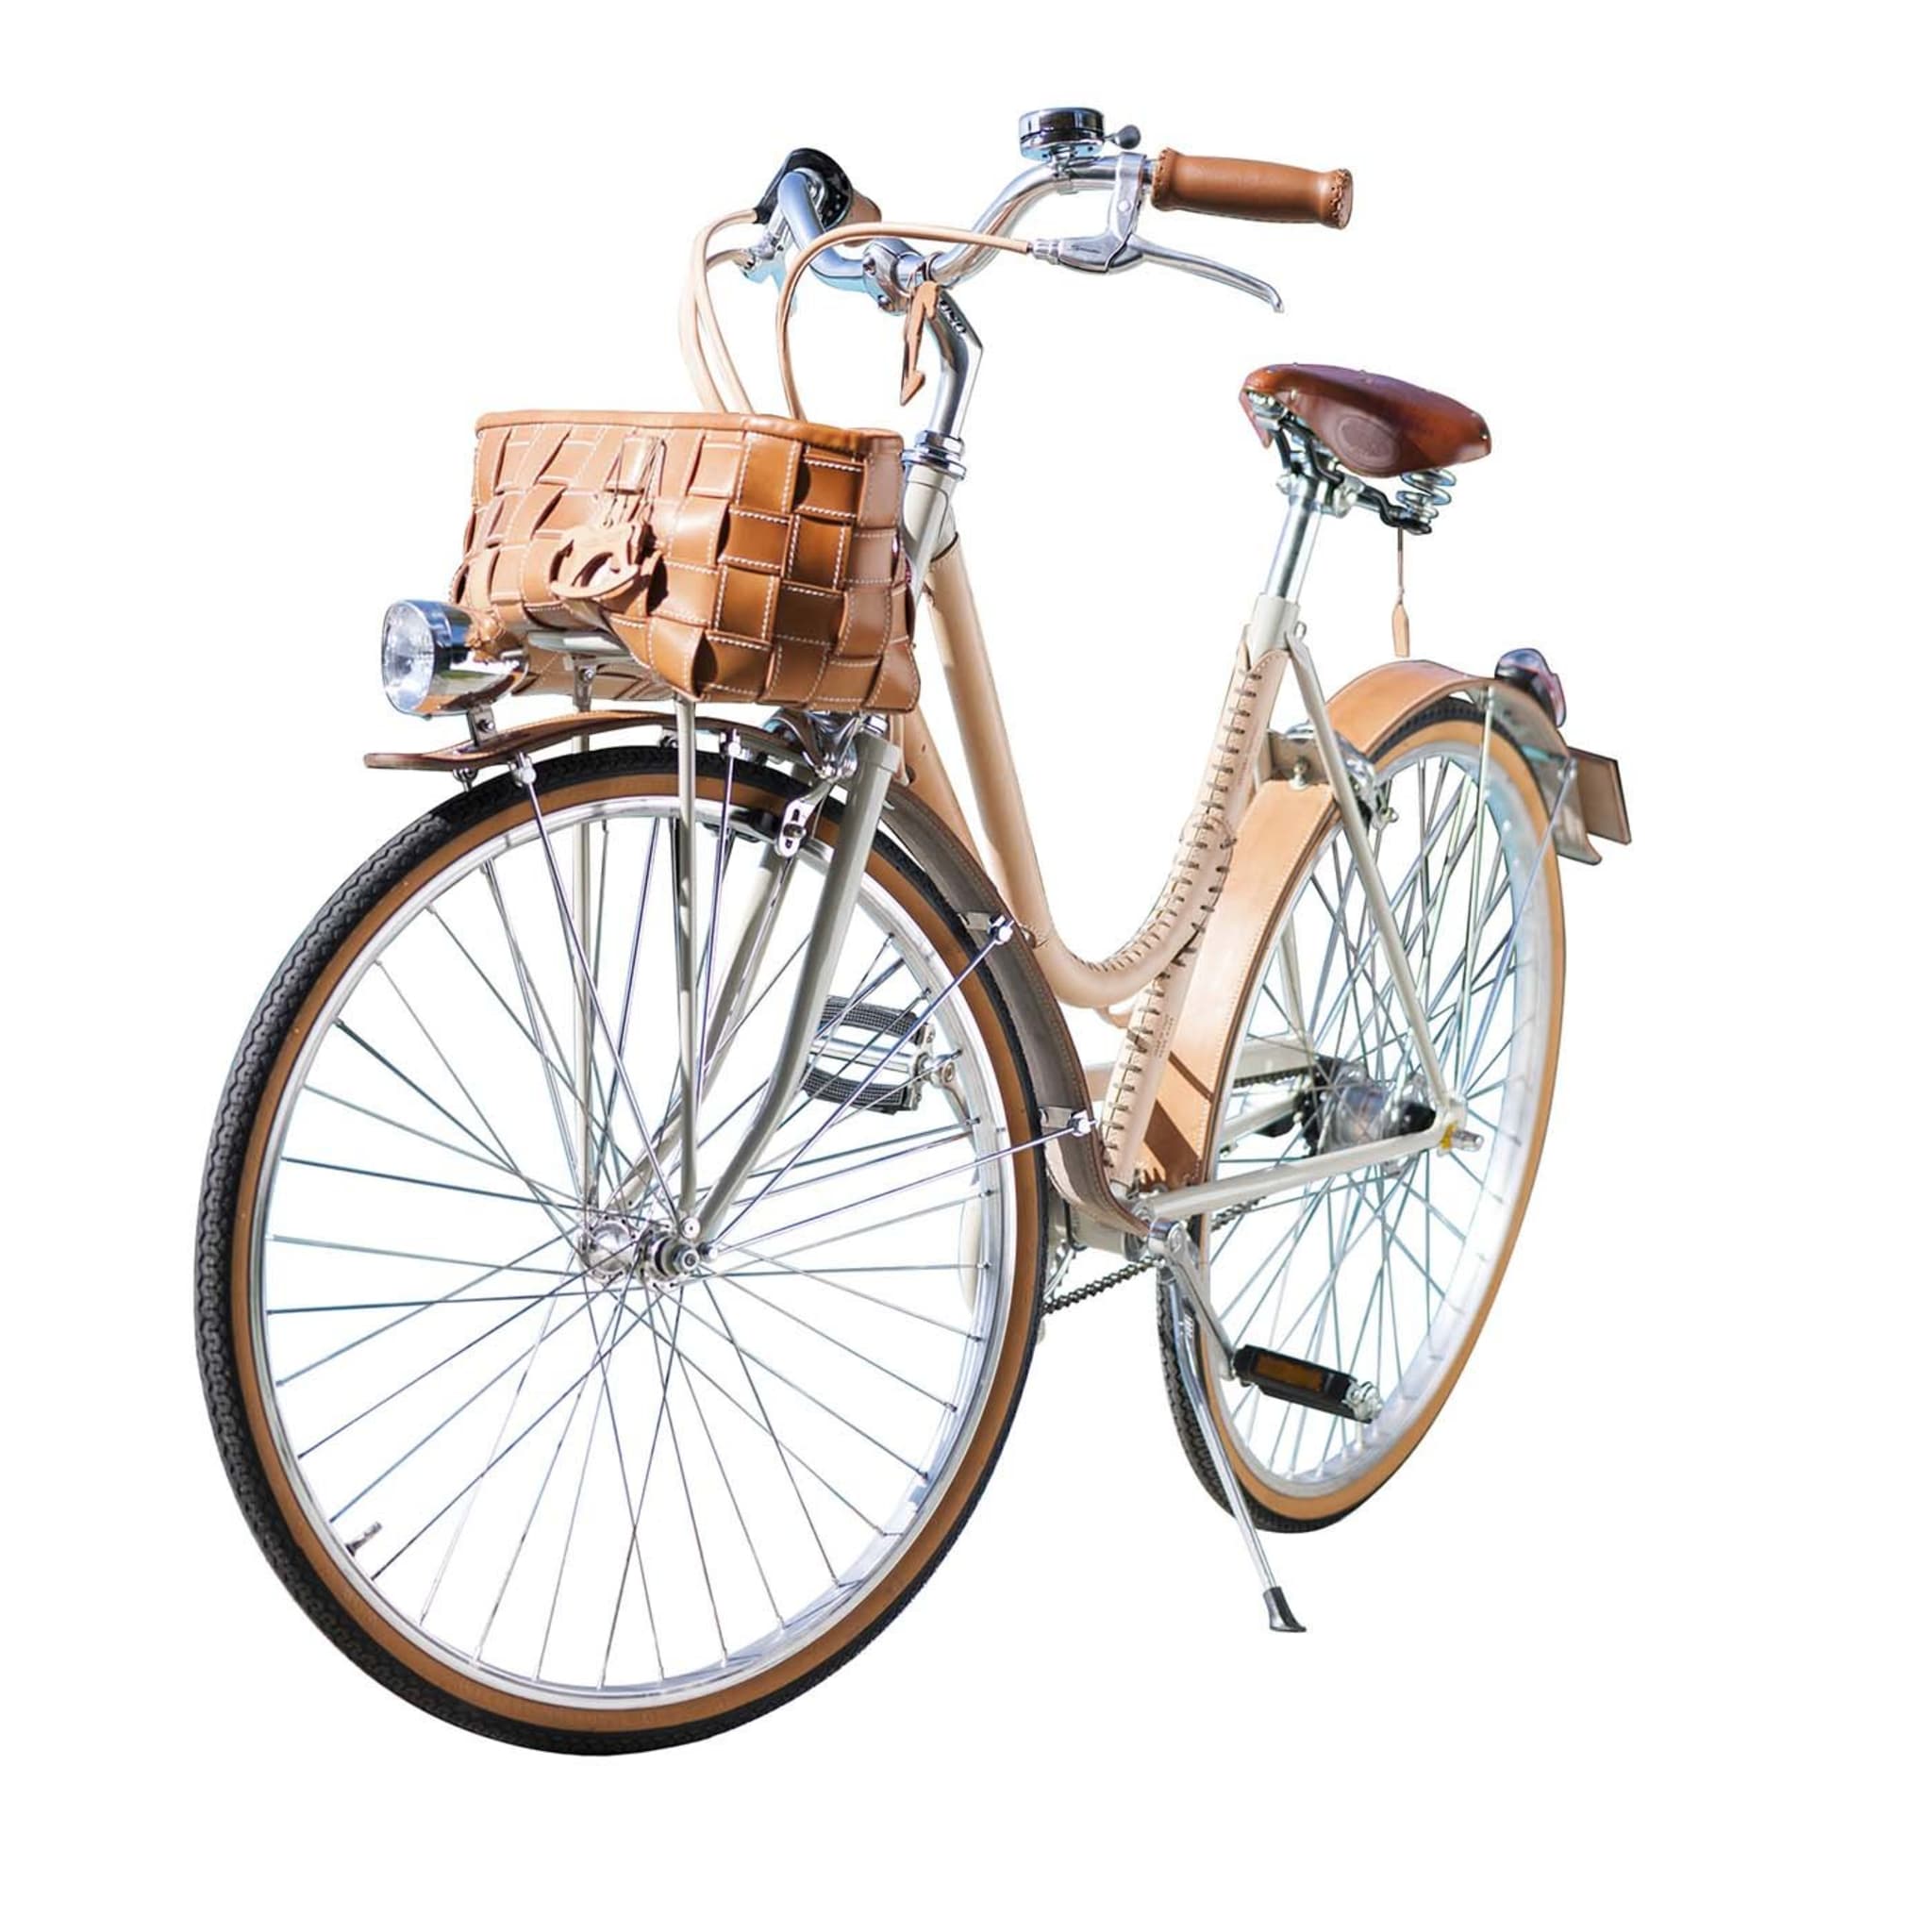 Bicicleta de mujer cubierta de cuero Natural - Vista principal